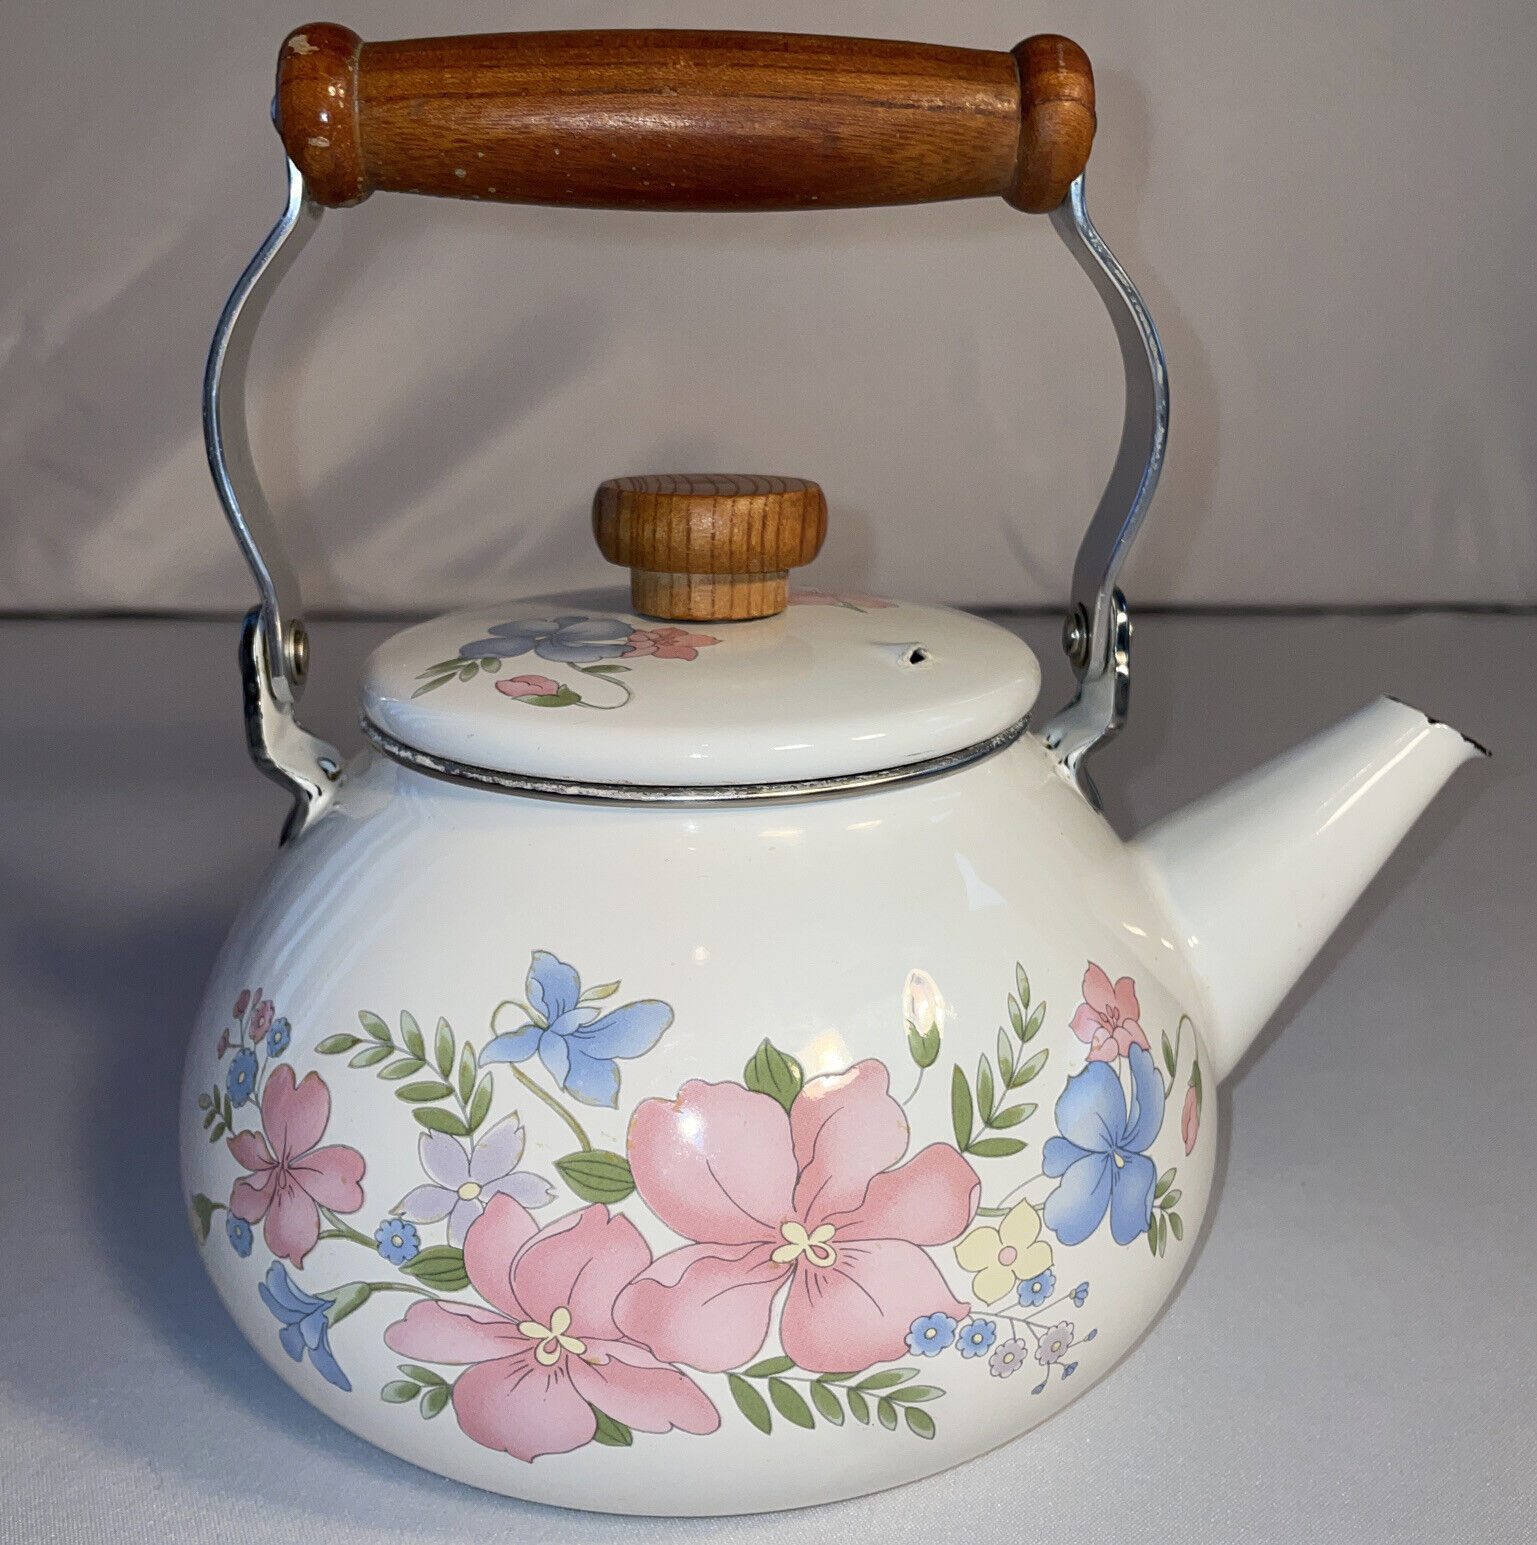 Vintage Enamel White Tea Pot Kettle Wood Handle Spring Floral Flowers Blue Pink